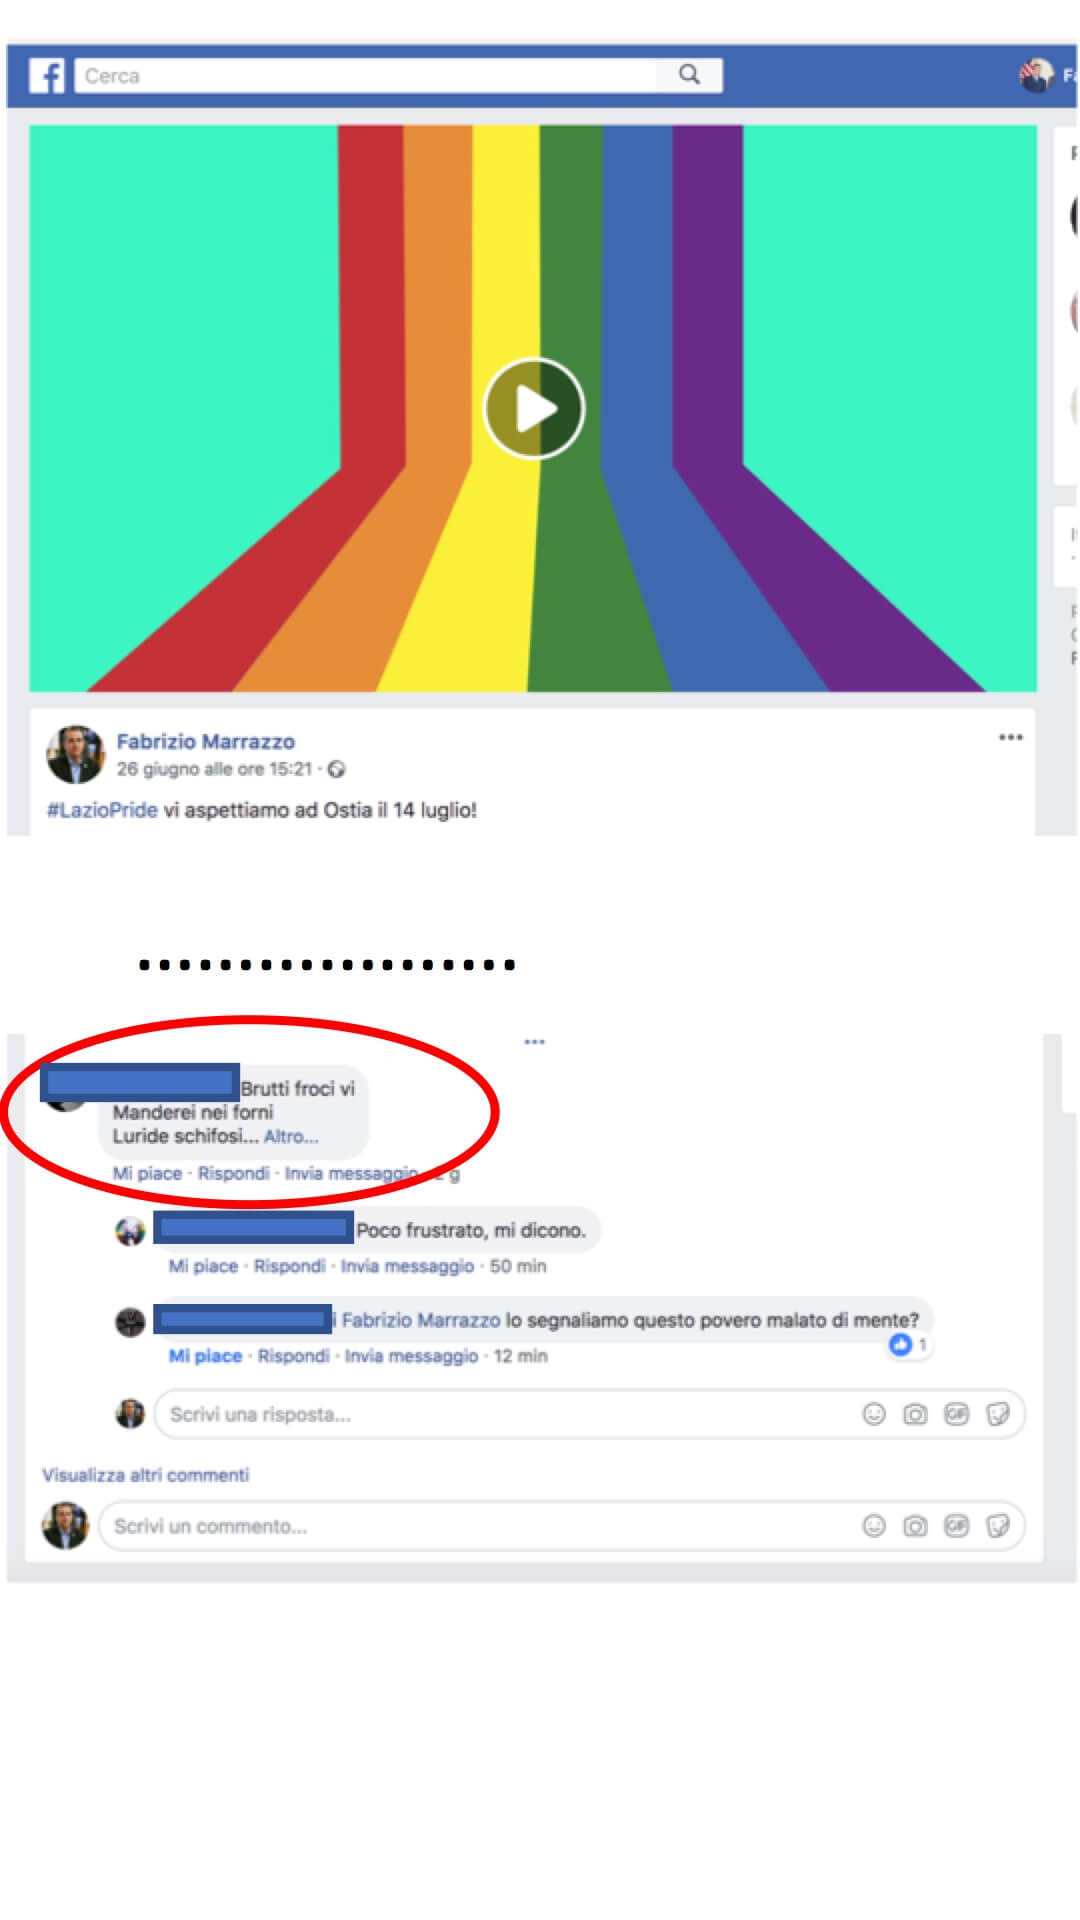 Lazio Pride 2018, minacce omofobe sui social: 'brutti fr*ci, vi manderemo nei forni' - Scaled Image 23 - Gay.it